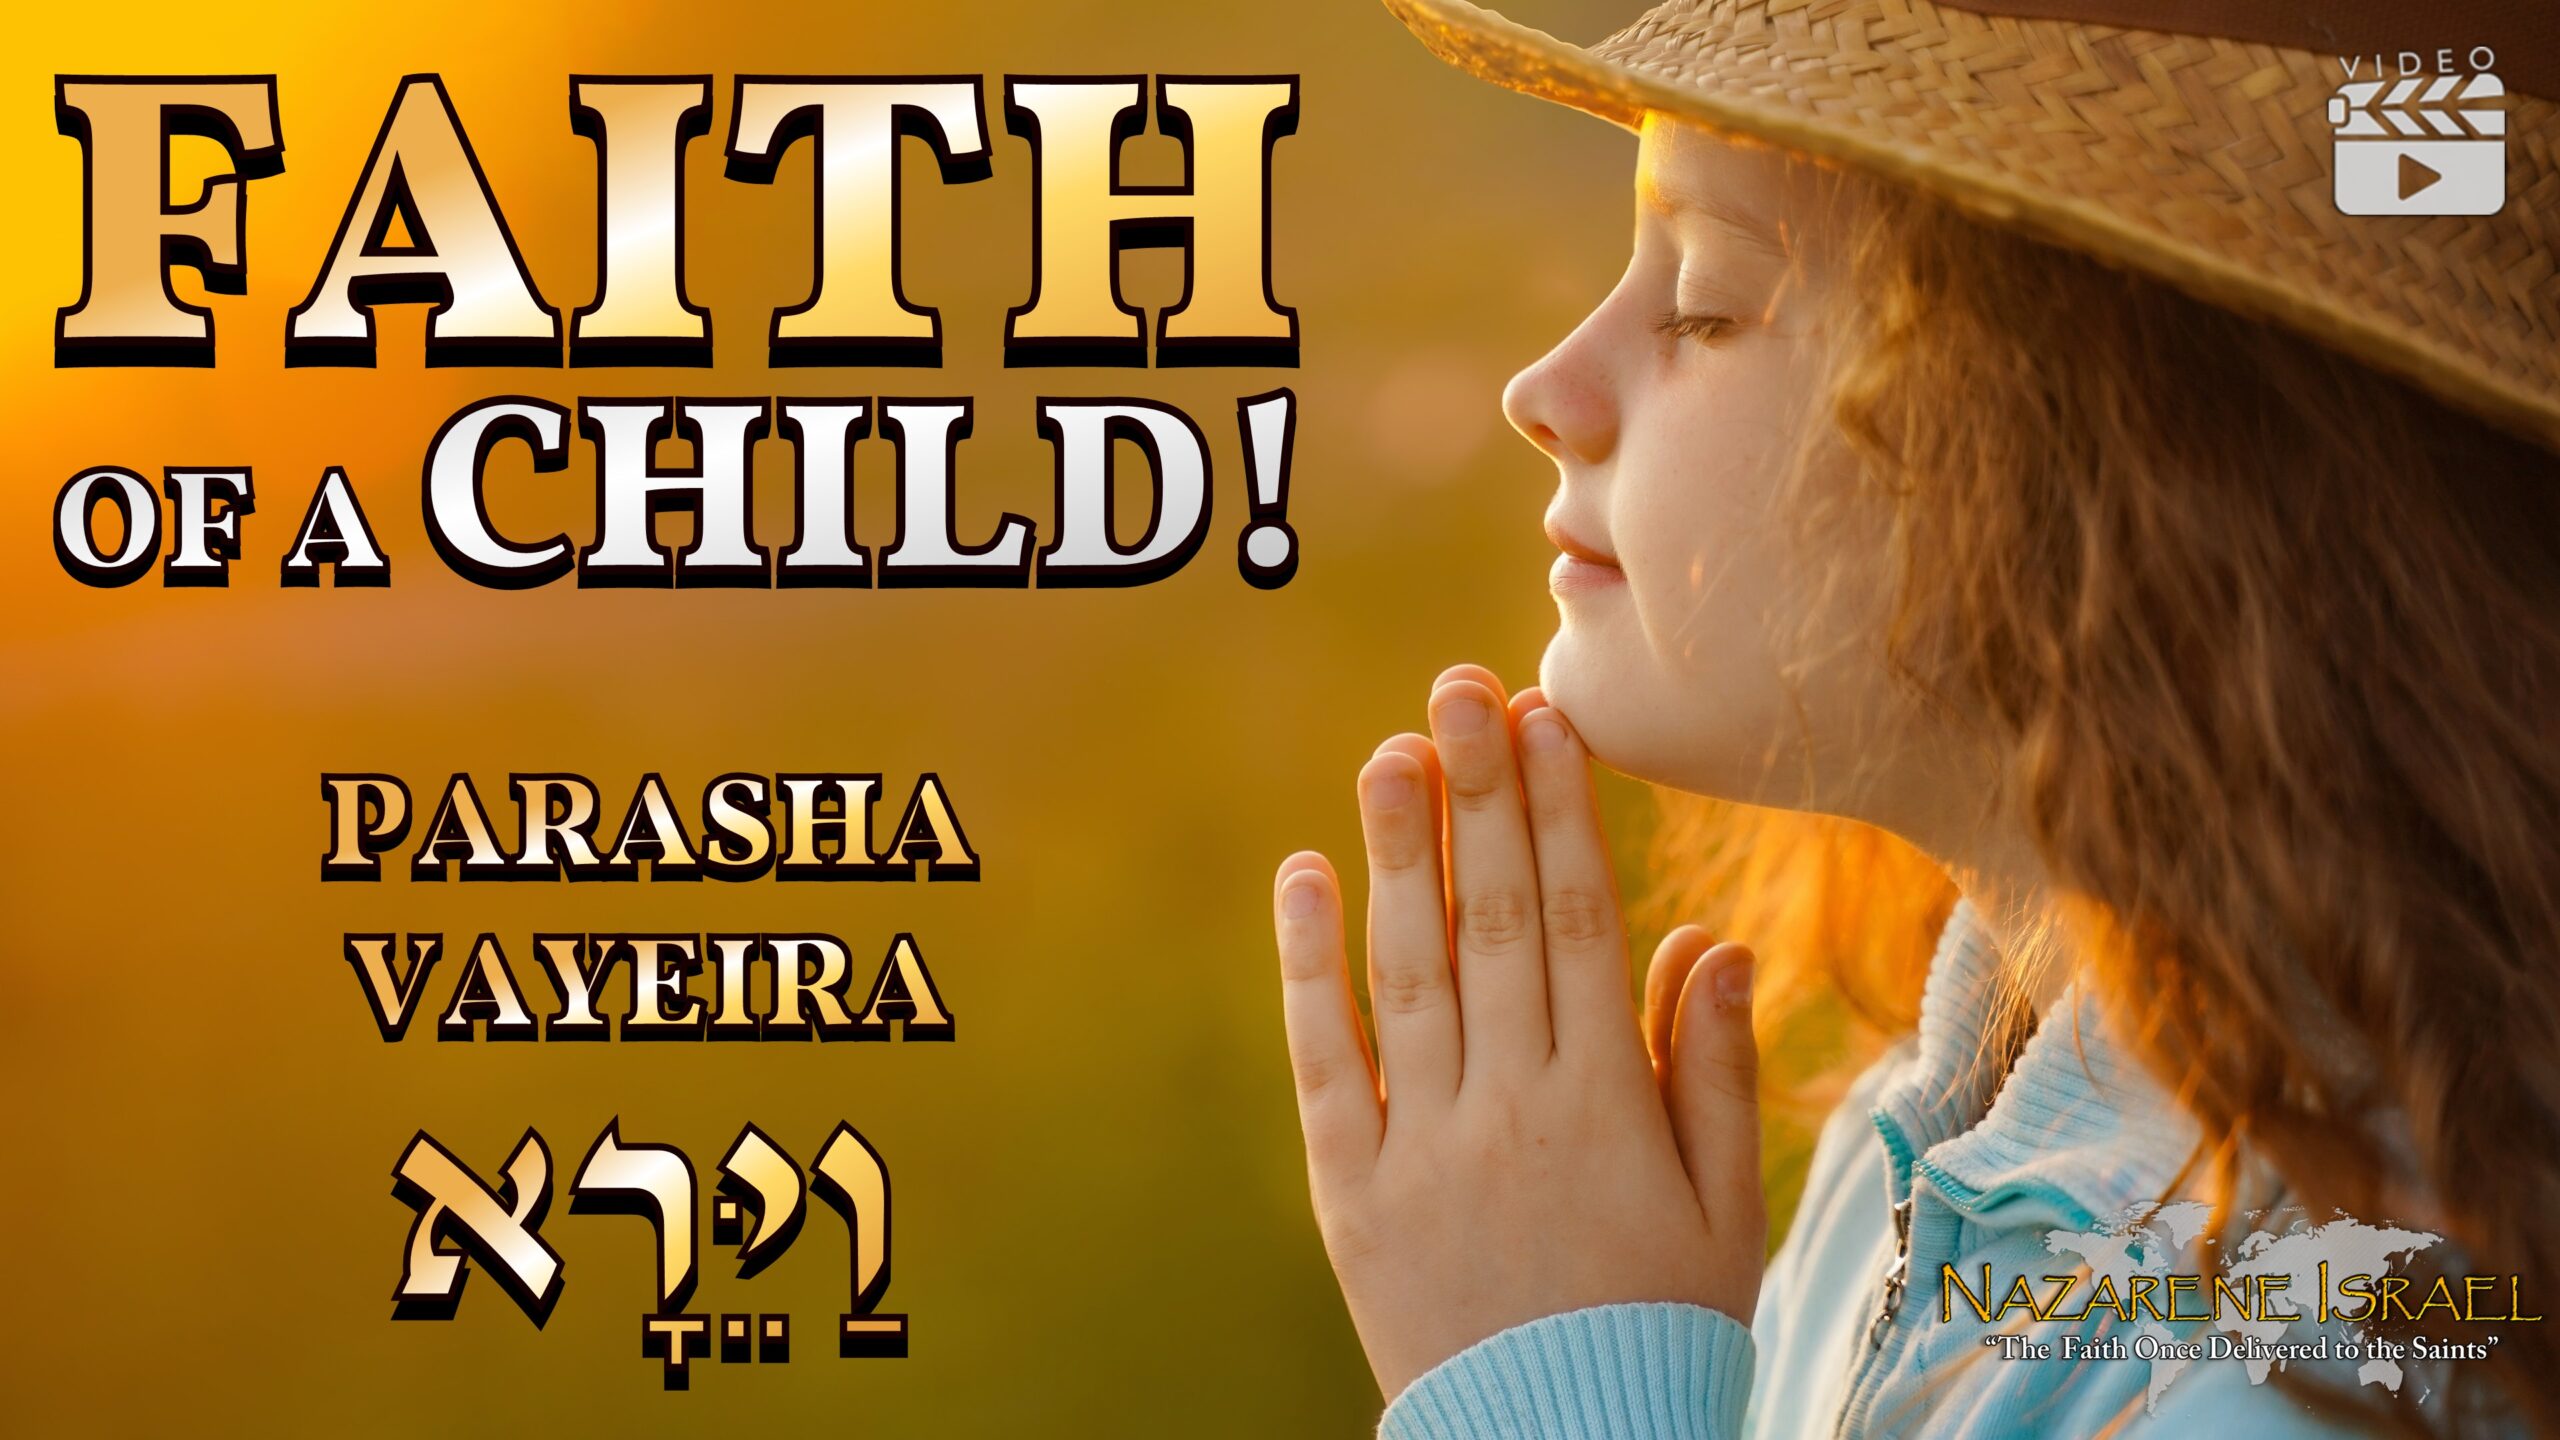 Parasha Vayeira: Faith of a Child!